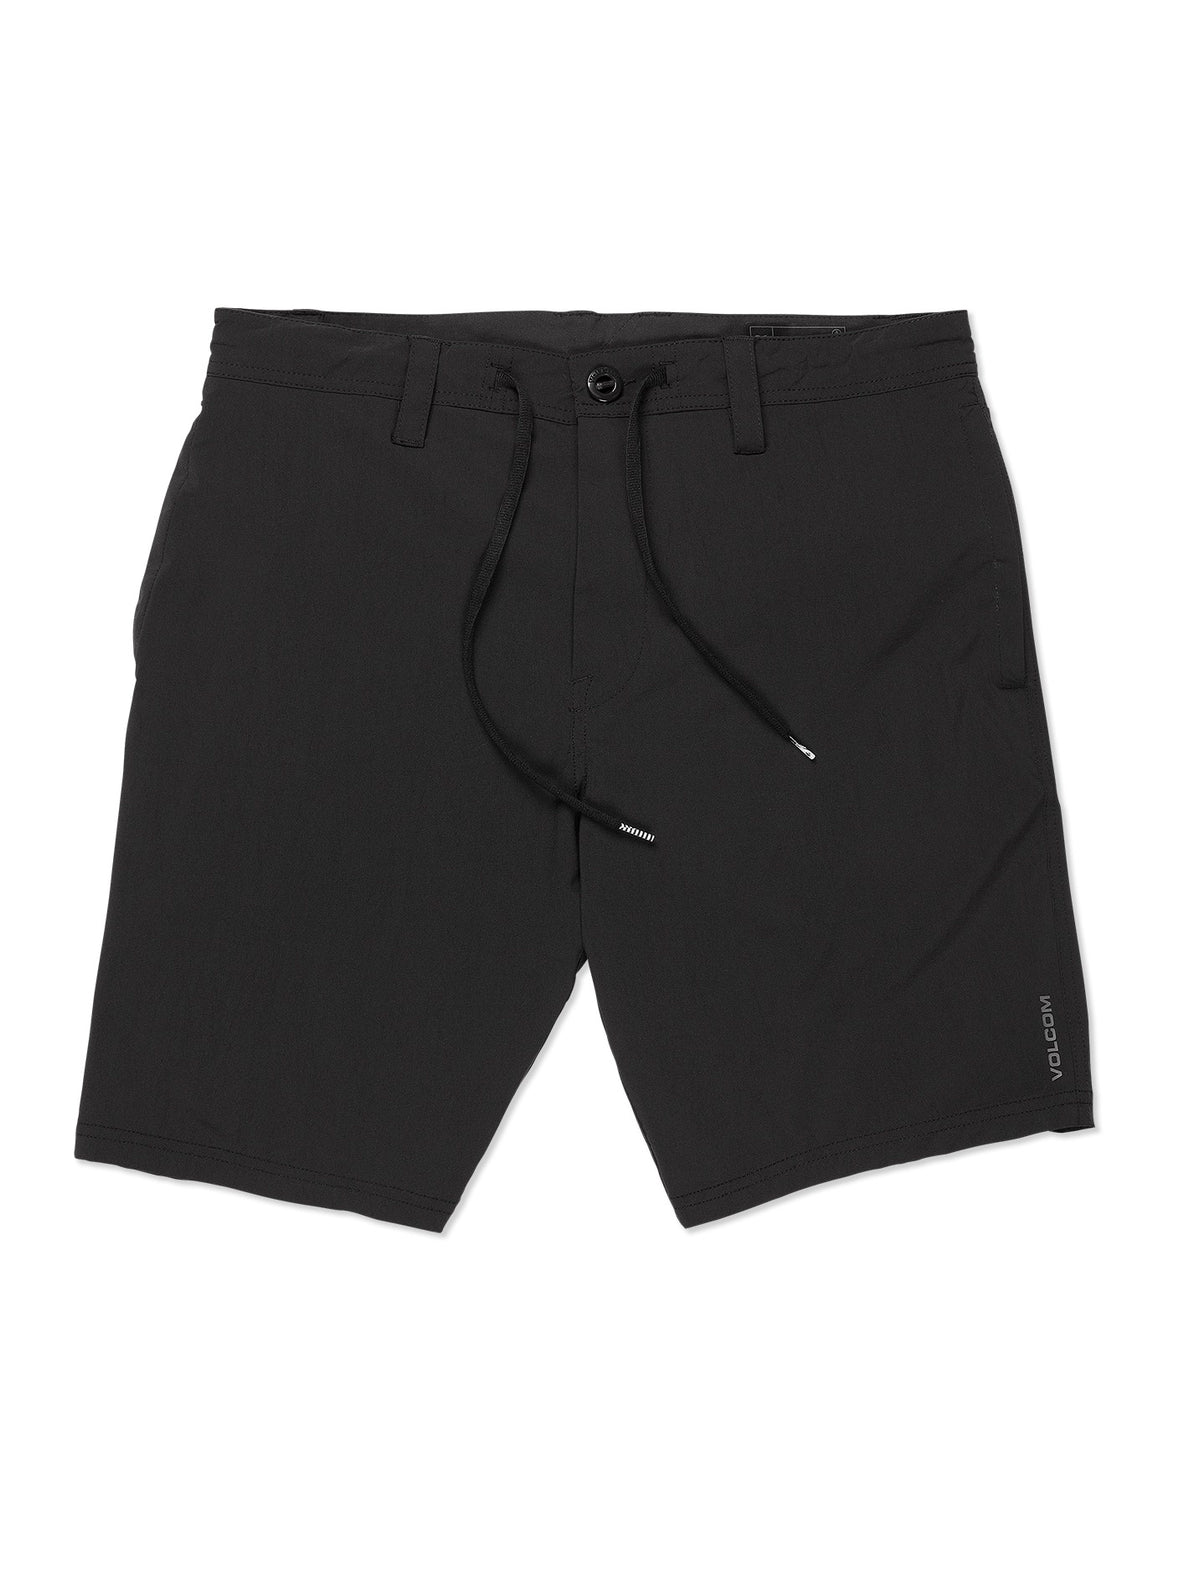 Voltripper Hybrid Shorts - Black – Volcom US